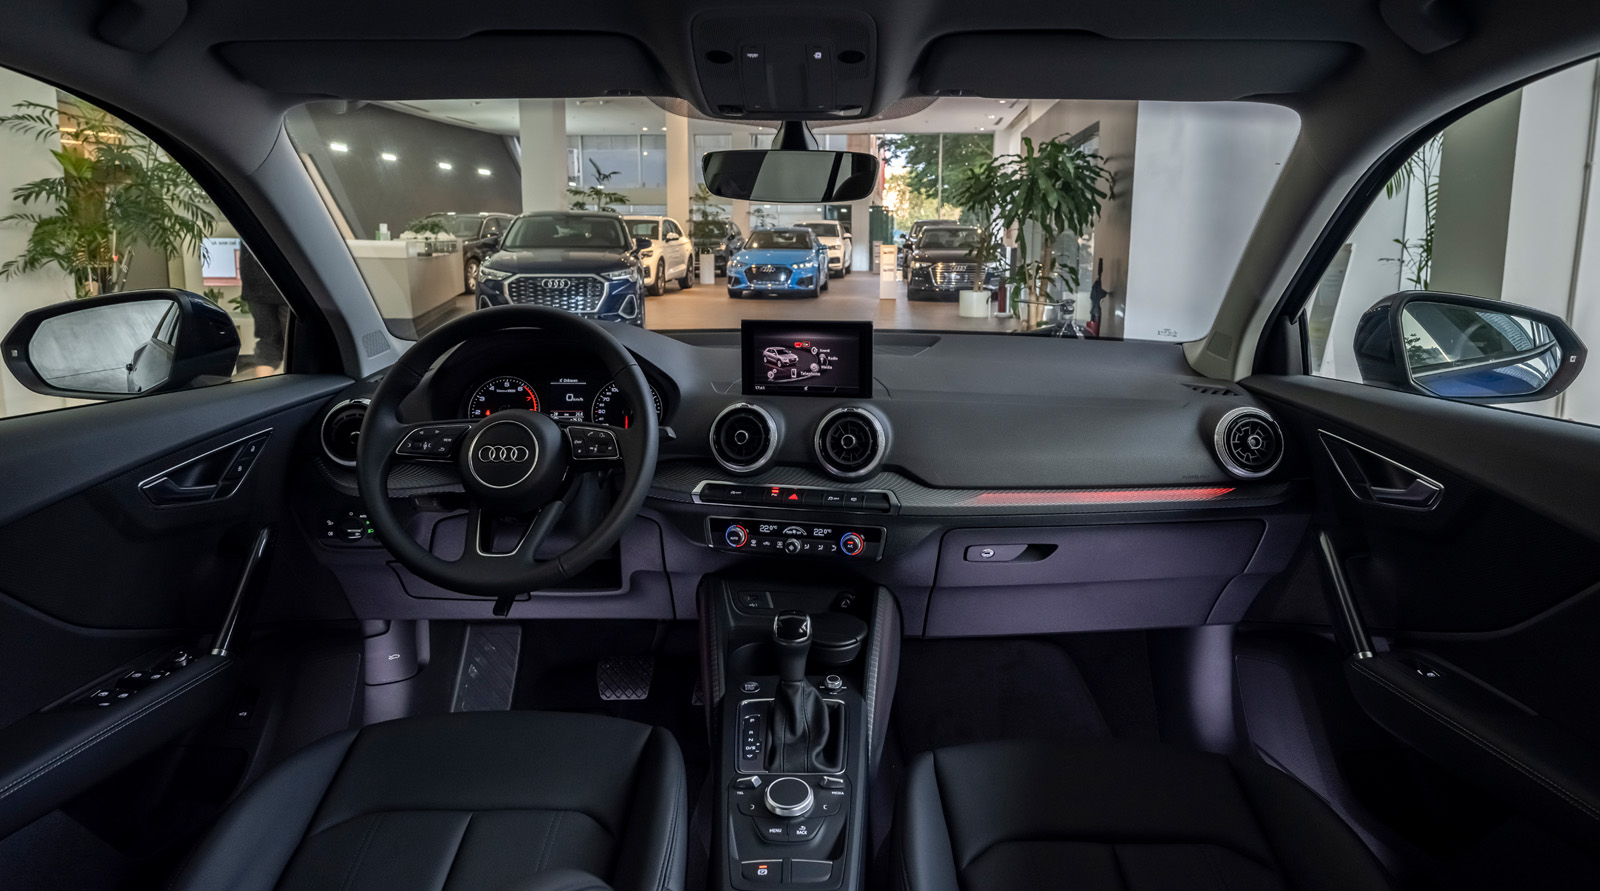 Ra mắt Audi Q2 2021 tại Việt Nam: Giá khoảng 1,7 tỷ, cạnh tranh BMW X1 với giá rẻ hơn nhưng trang bị mới gây chú ý - Ảnh 3.